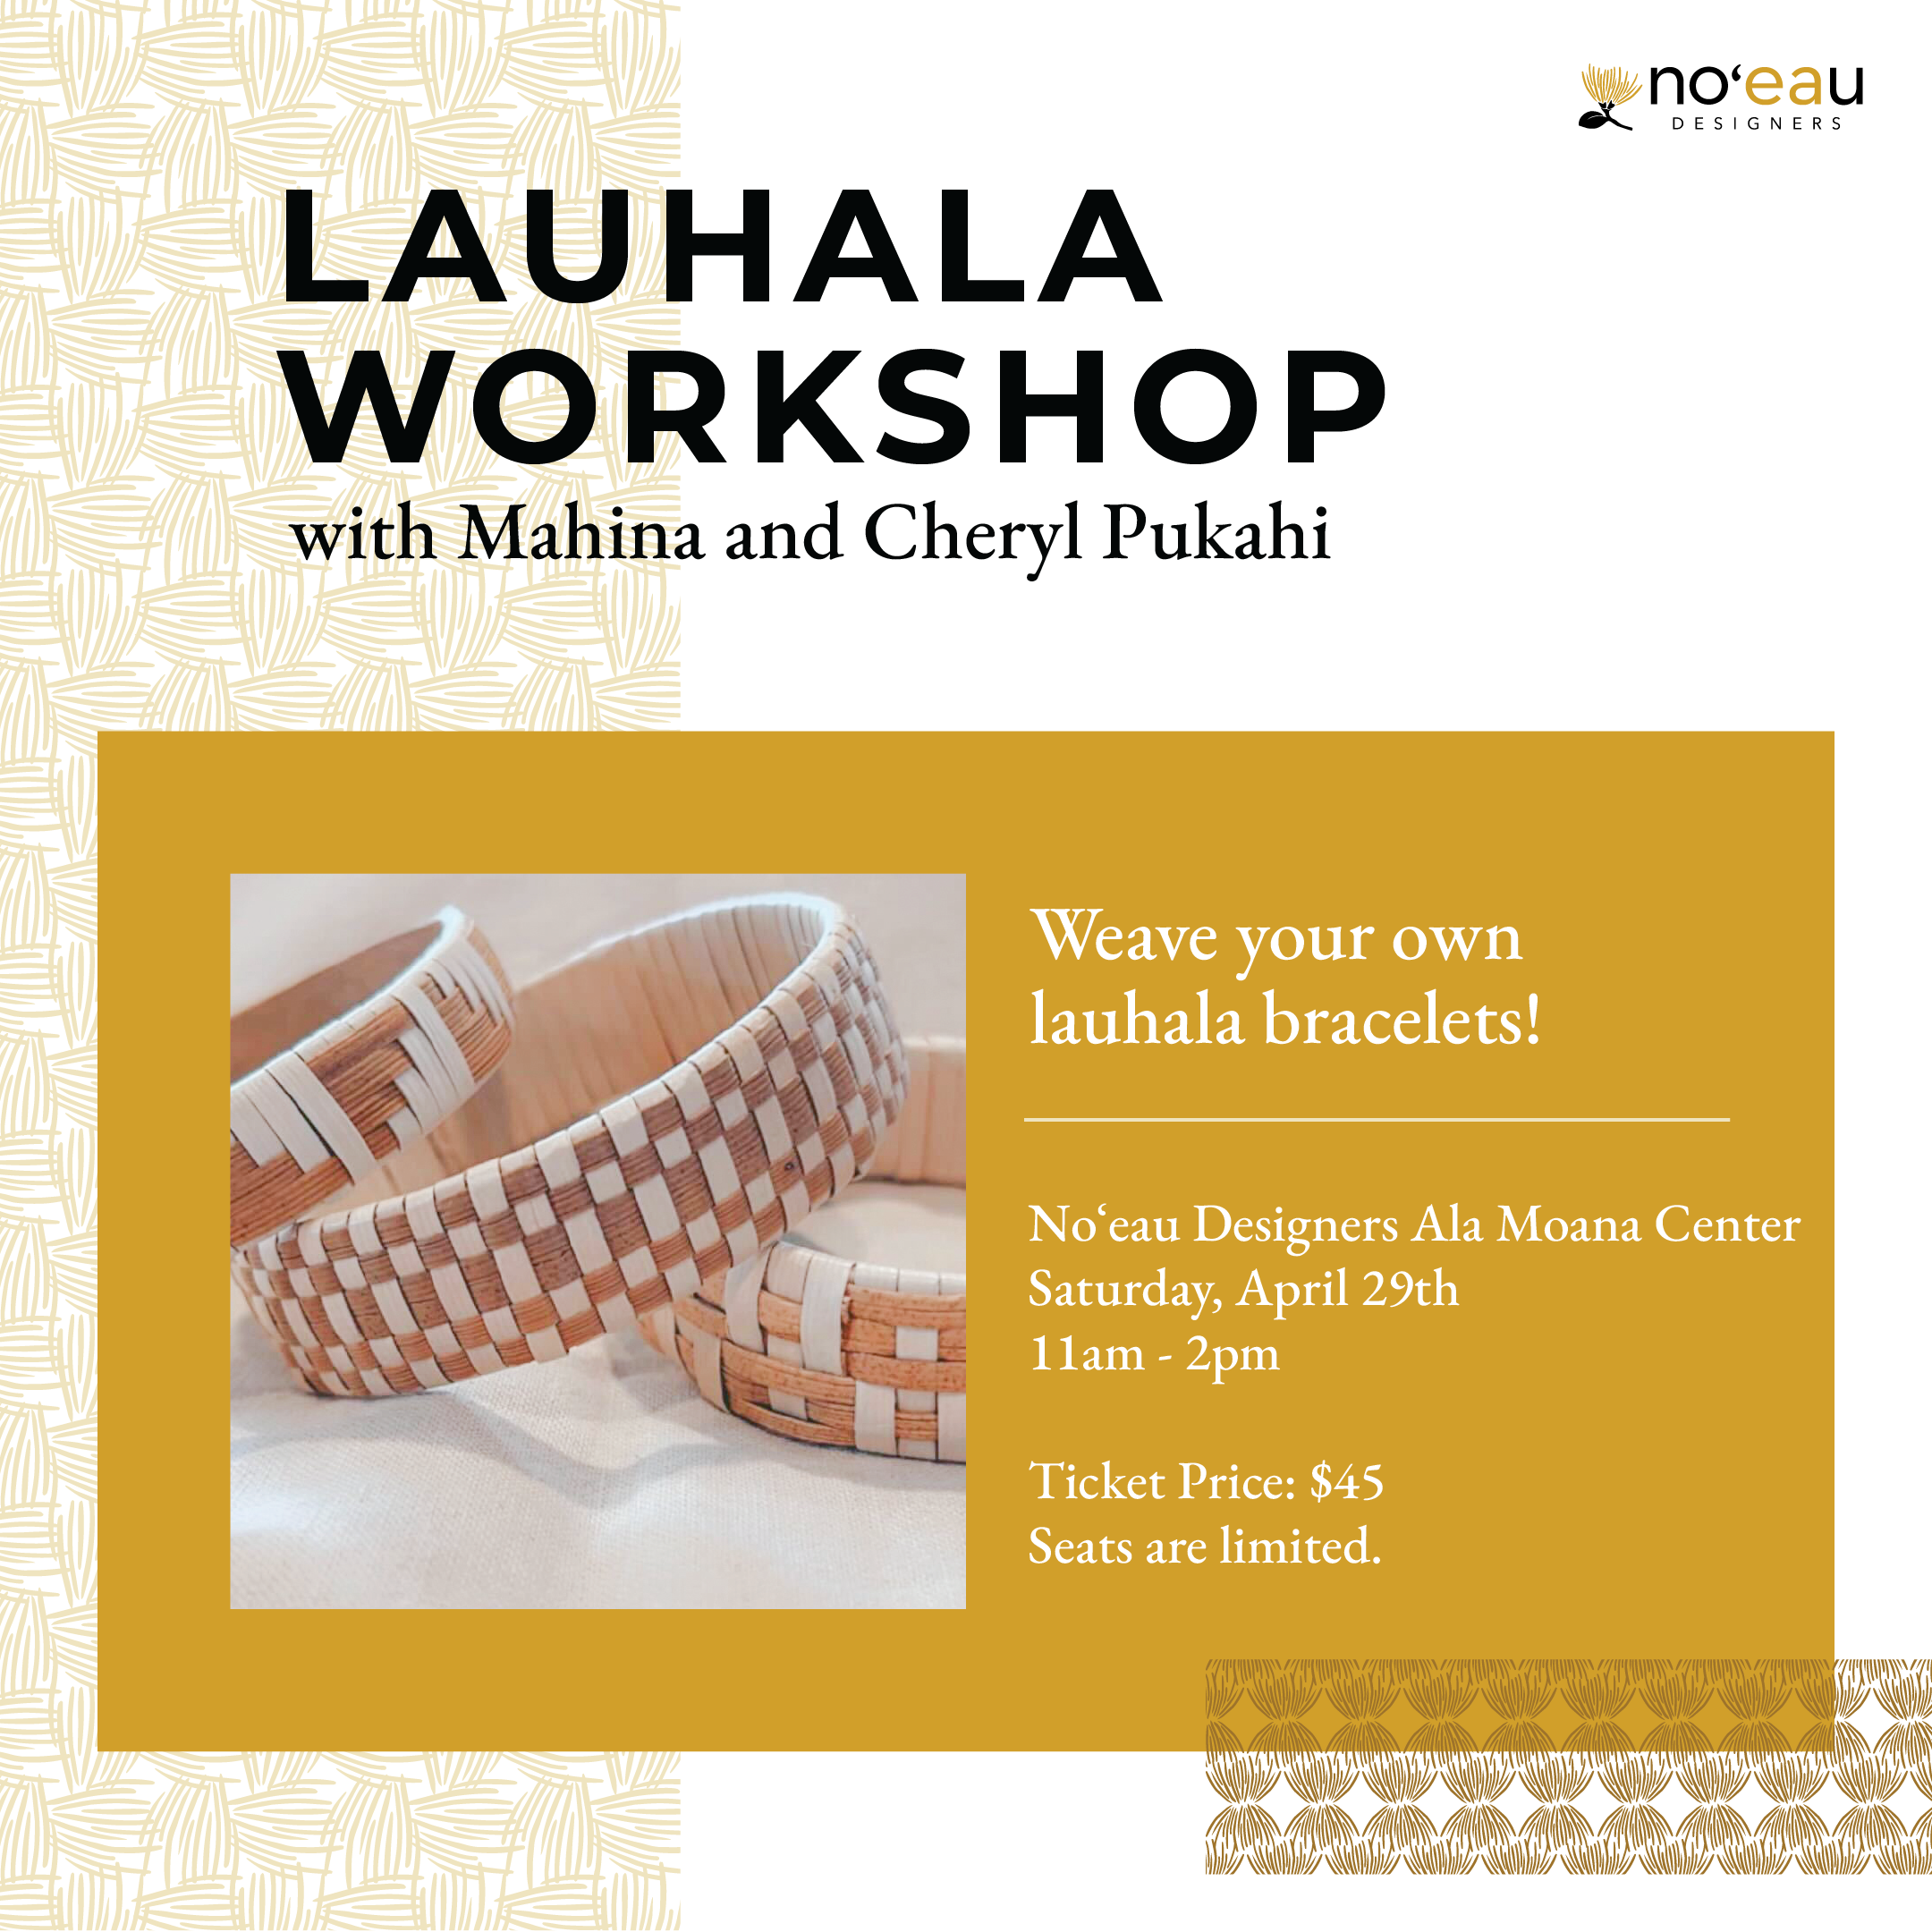 Lauhala Workshop: Lauhala Bracelet from No'eau Designers